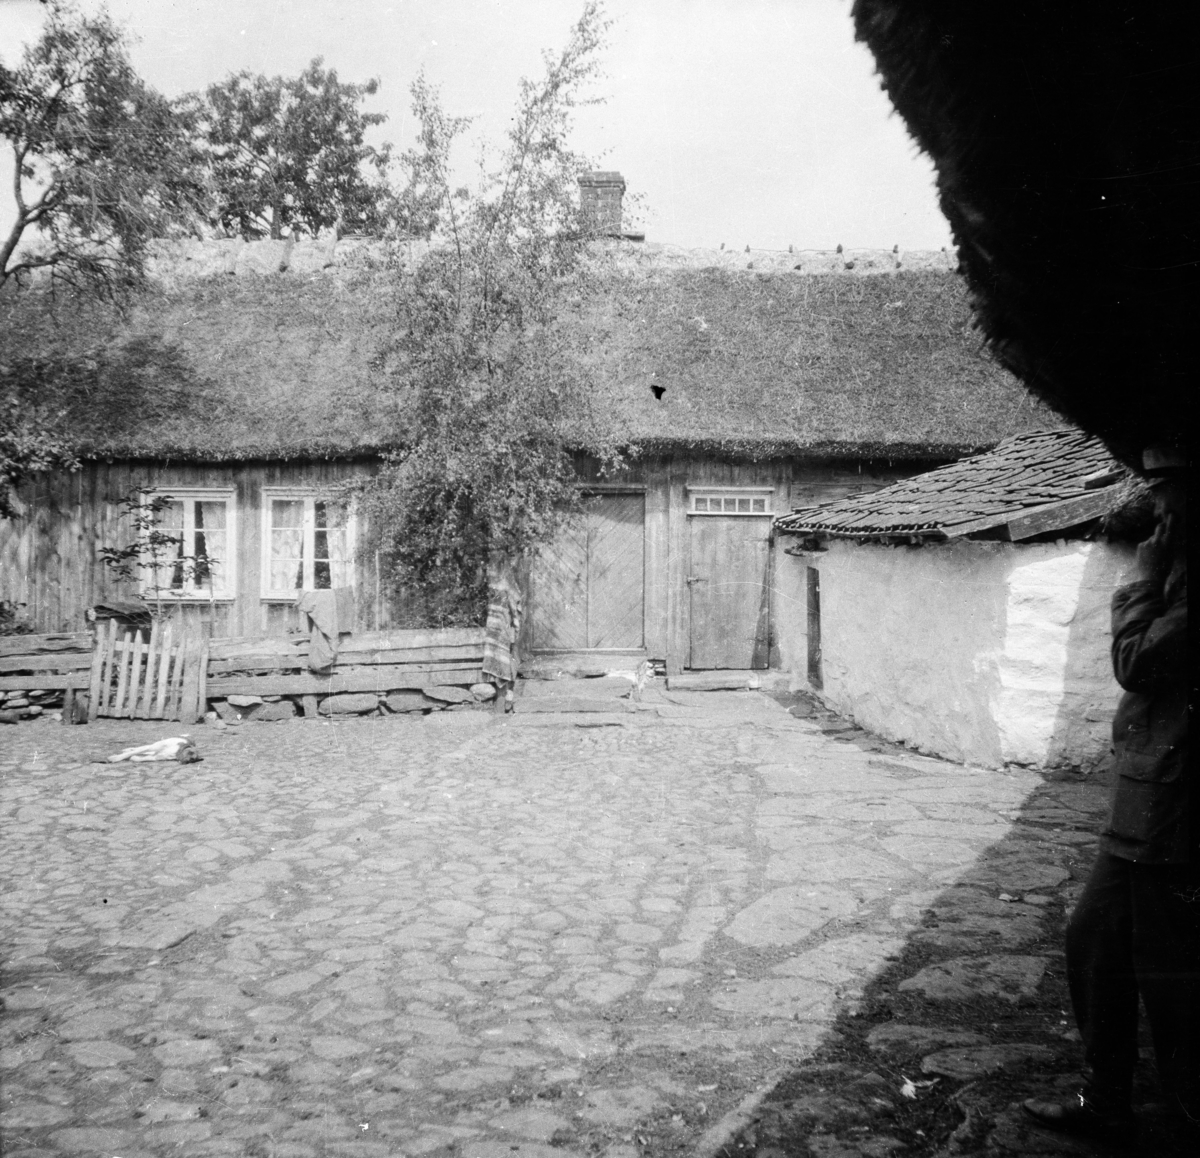 Källstorp, Halland
Exteriör

Svensk arkitektur: kyrkor, herrgårdar med mera fotograferade av Arkitekturminnesföreningen 1908-23.